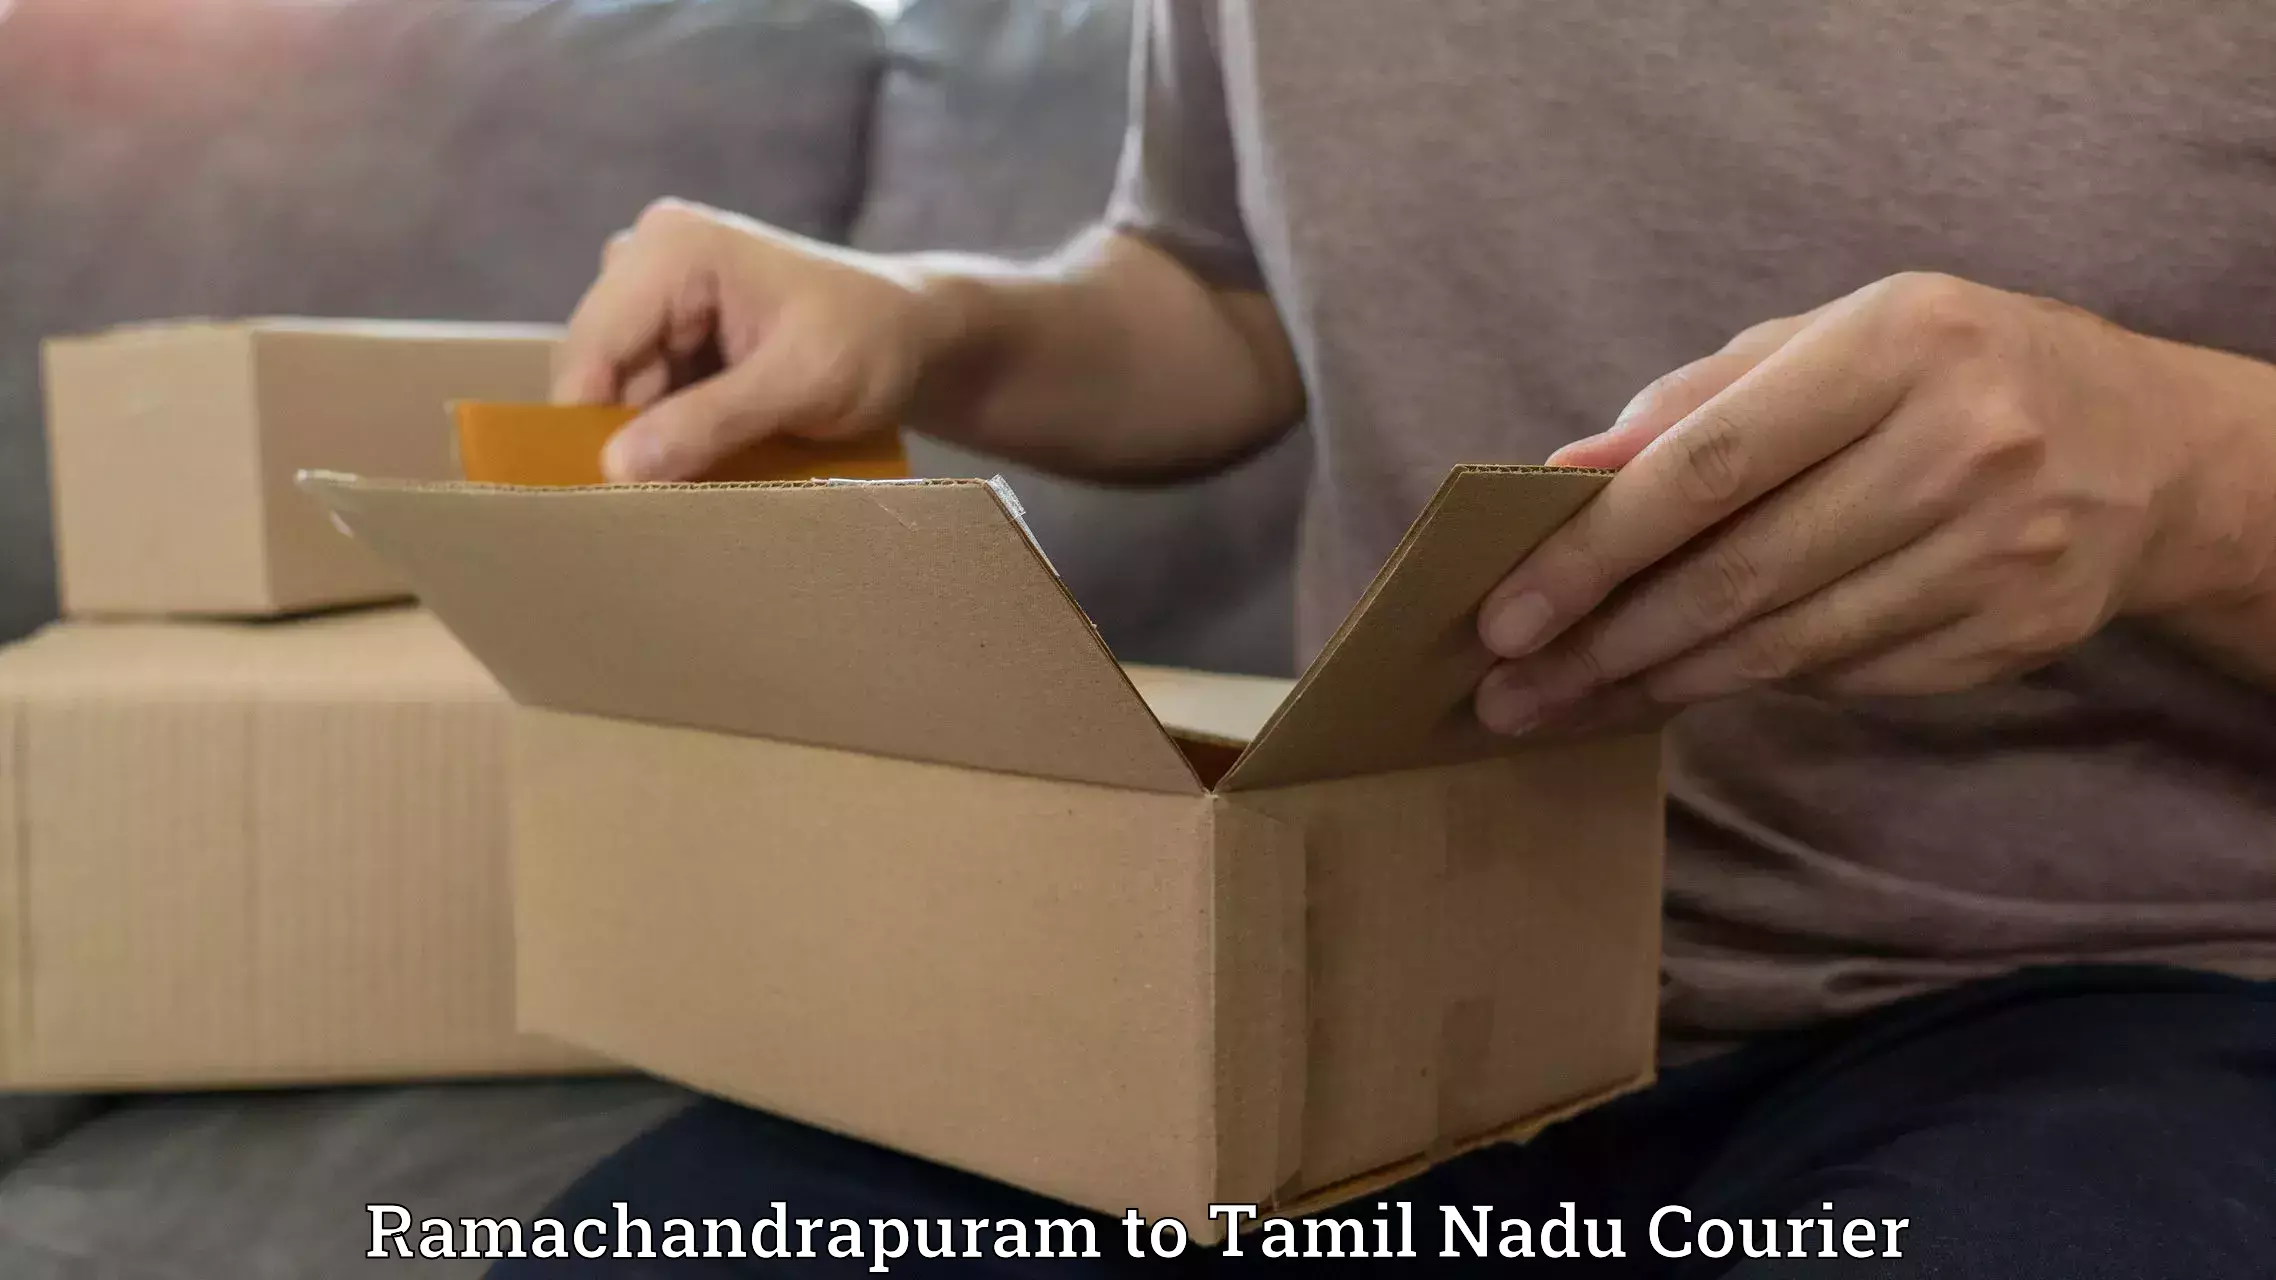 Bulk courier orders Ramachandrapuram to Amrita Vishwa Vidyapeetham Coimbatore